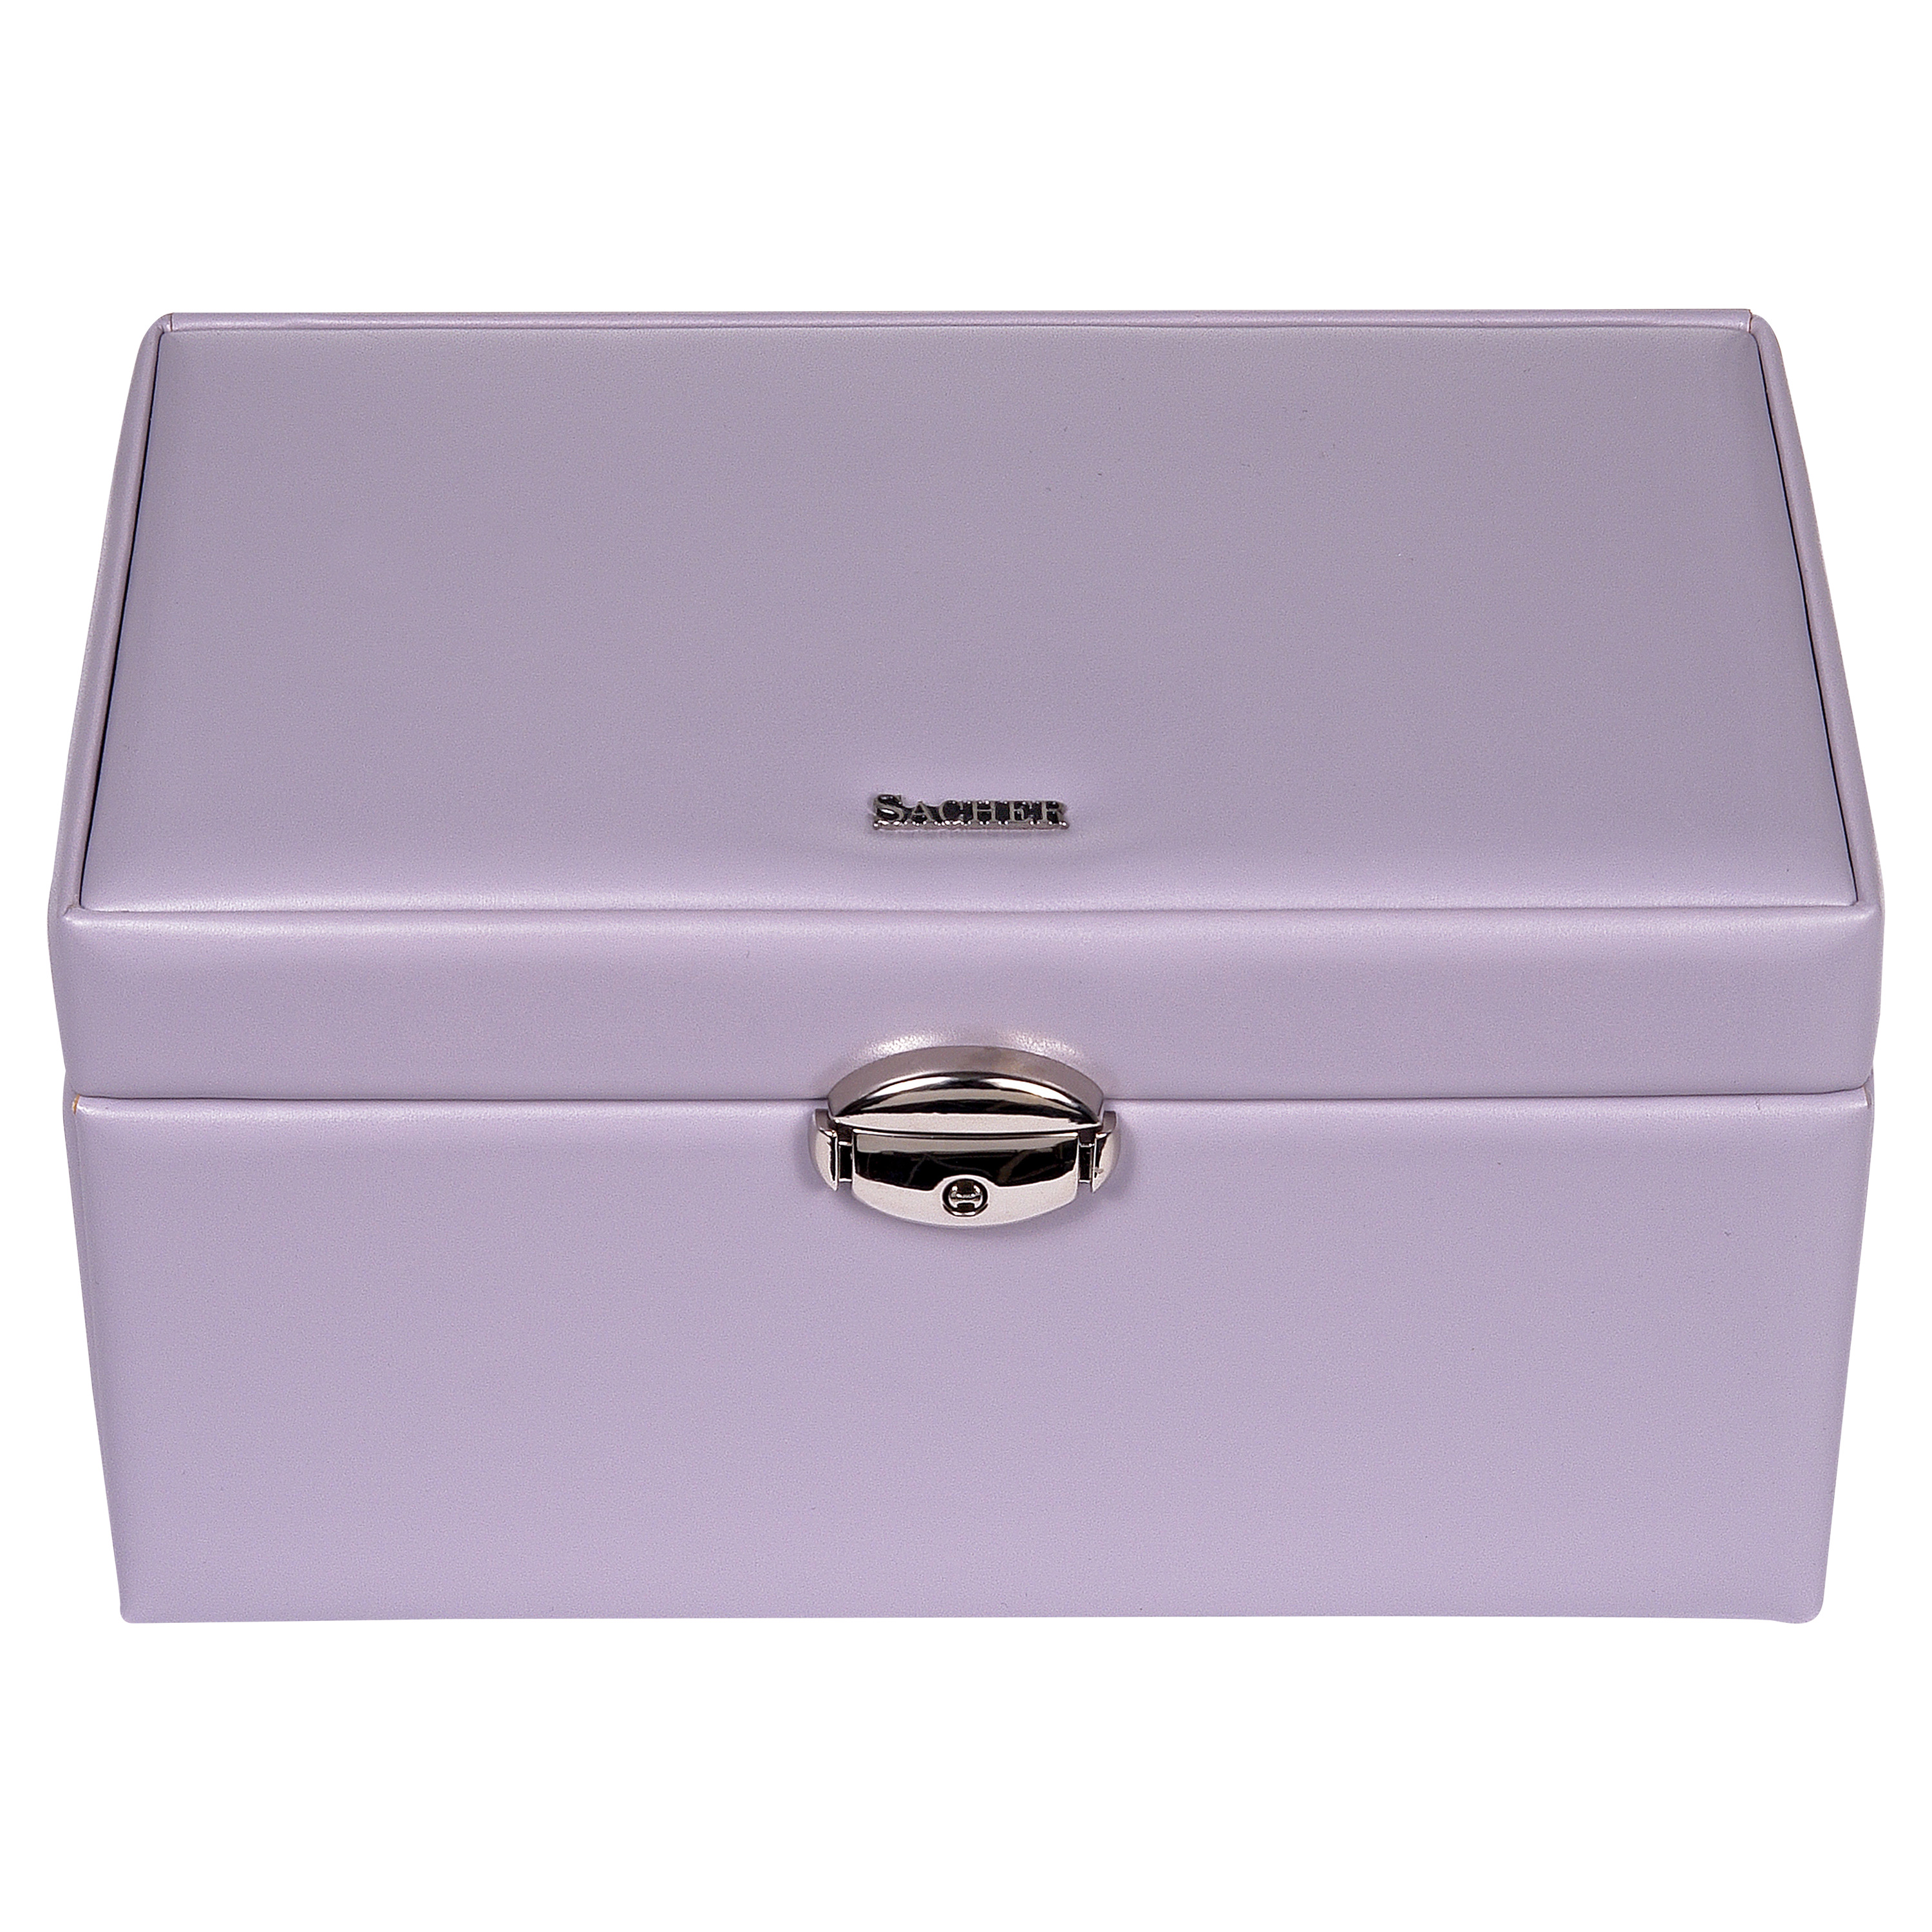 Jewellery box Elly coloranti / lilac